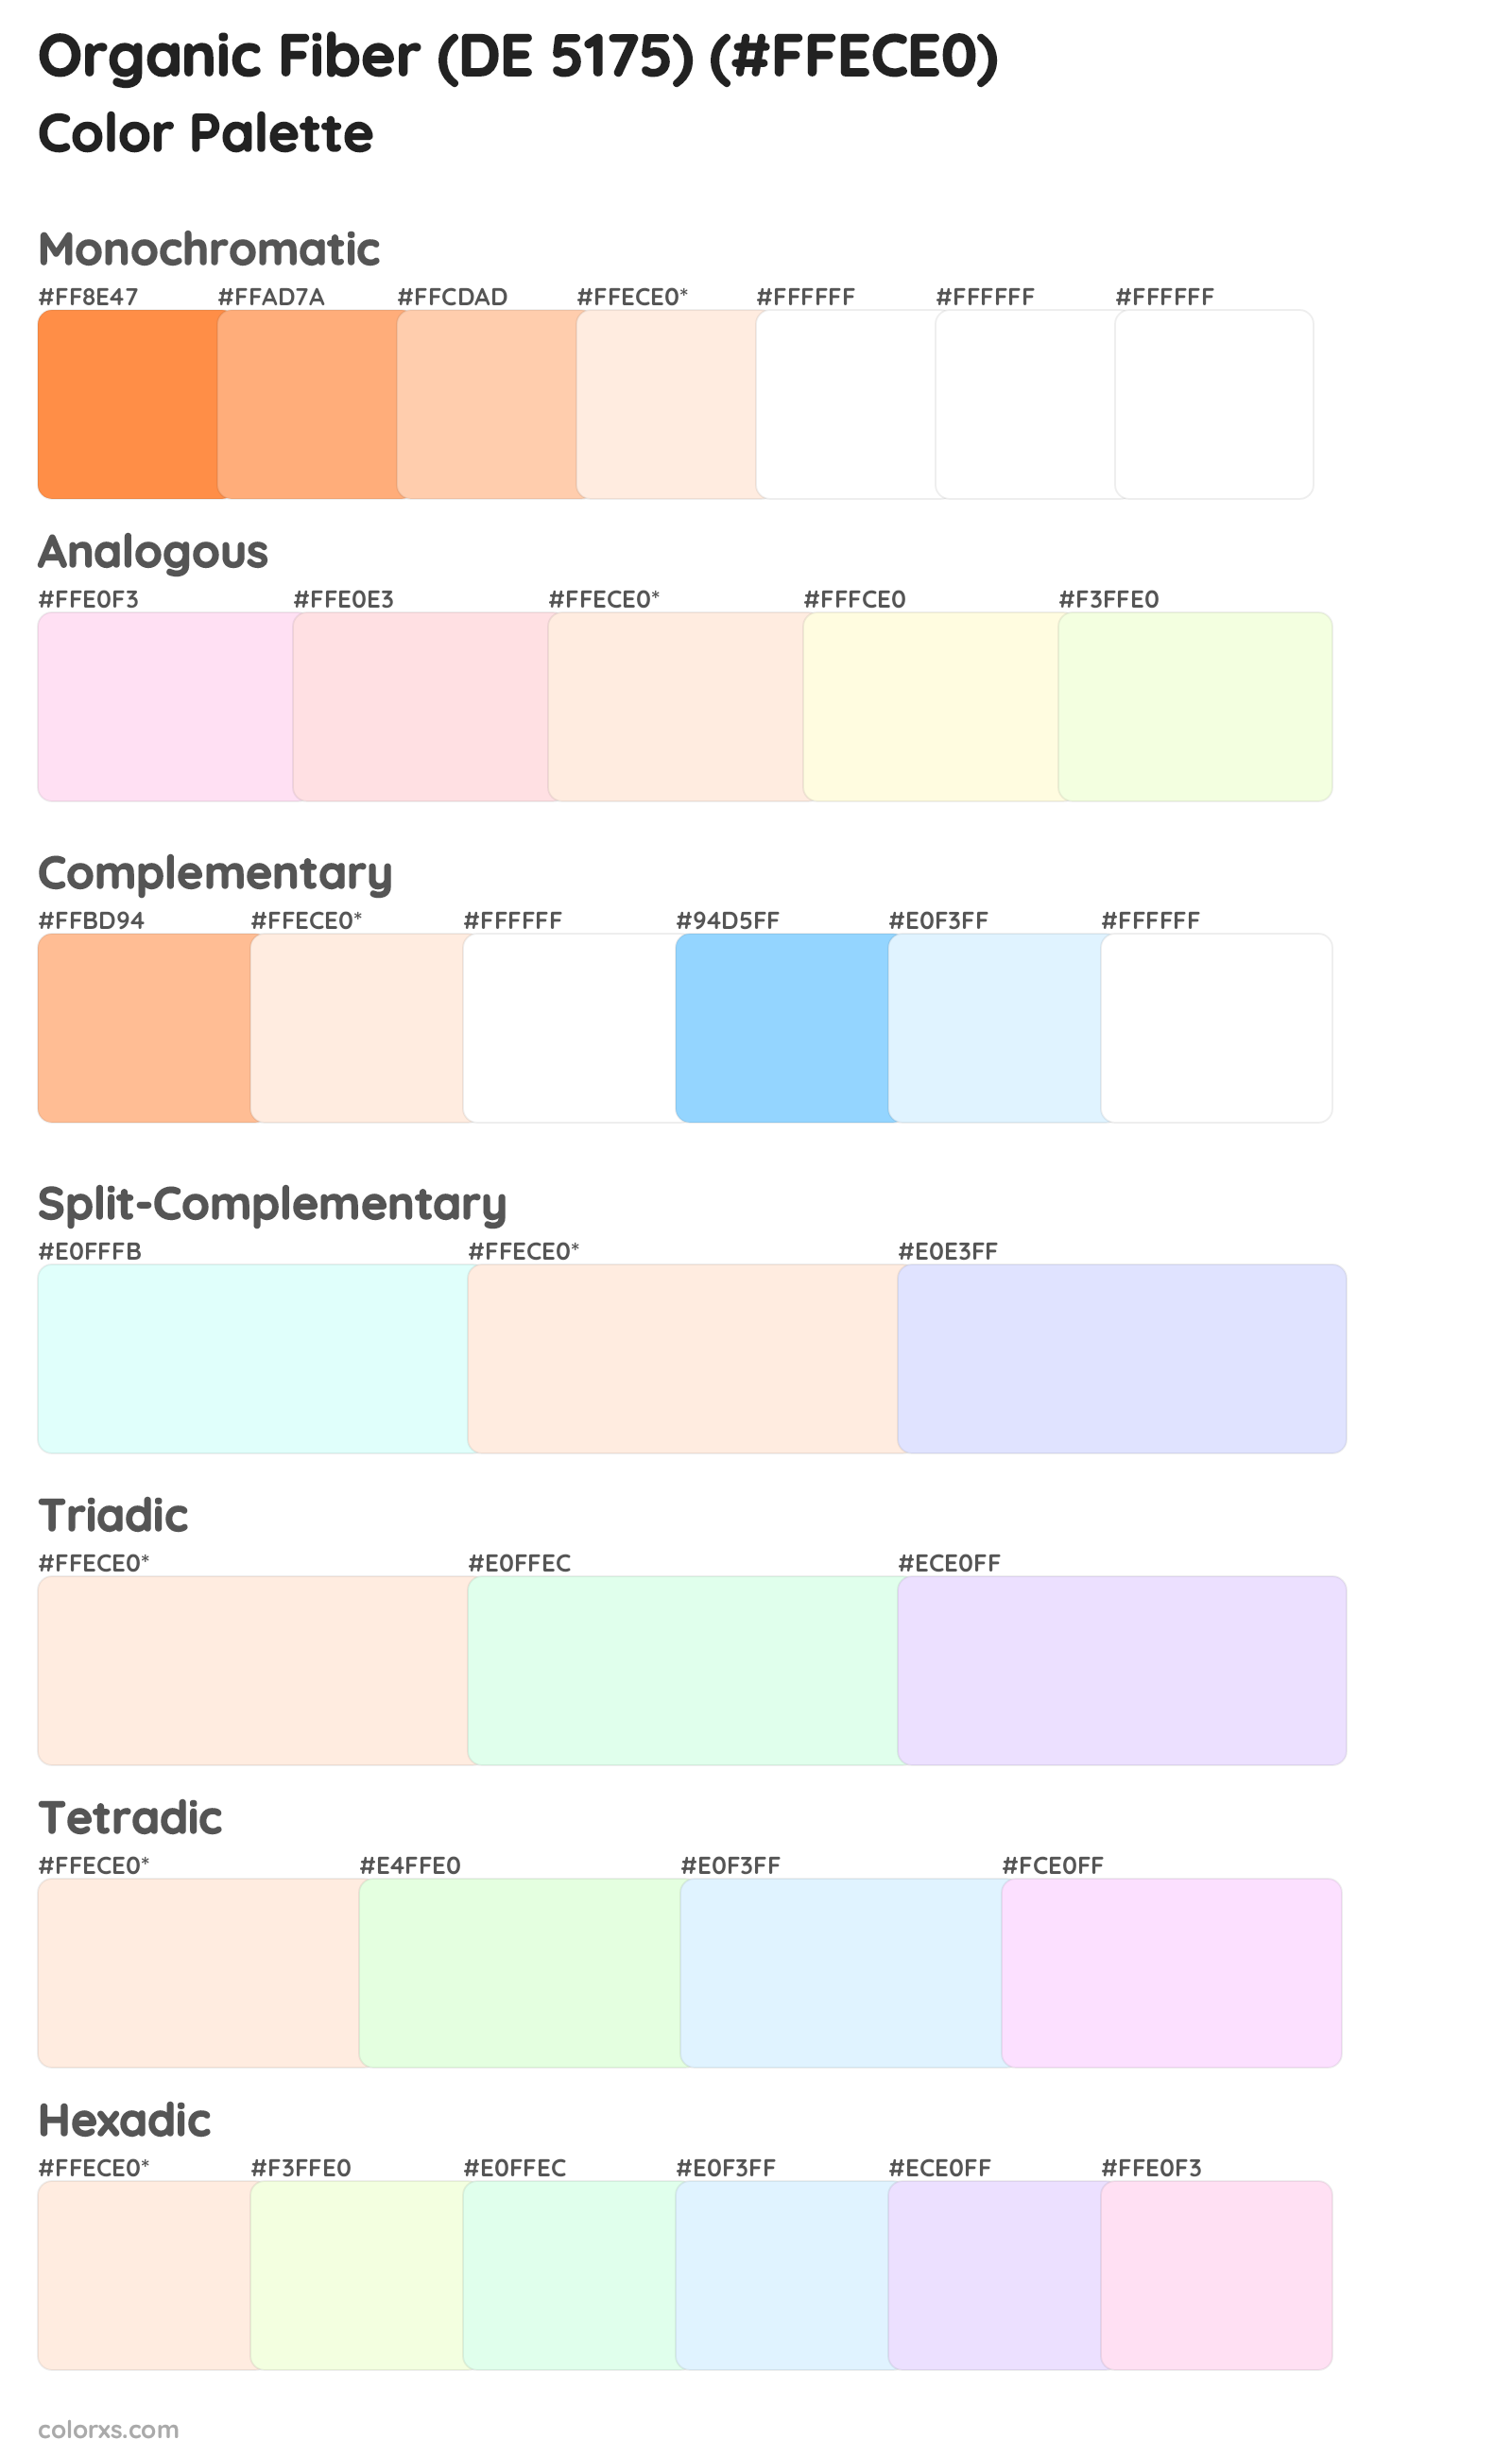 Organic Fiber (DE 5175) Color Scheme Palettes